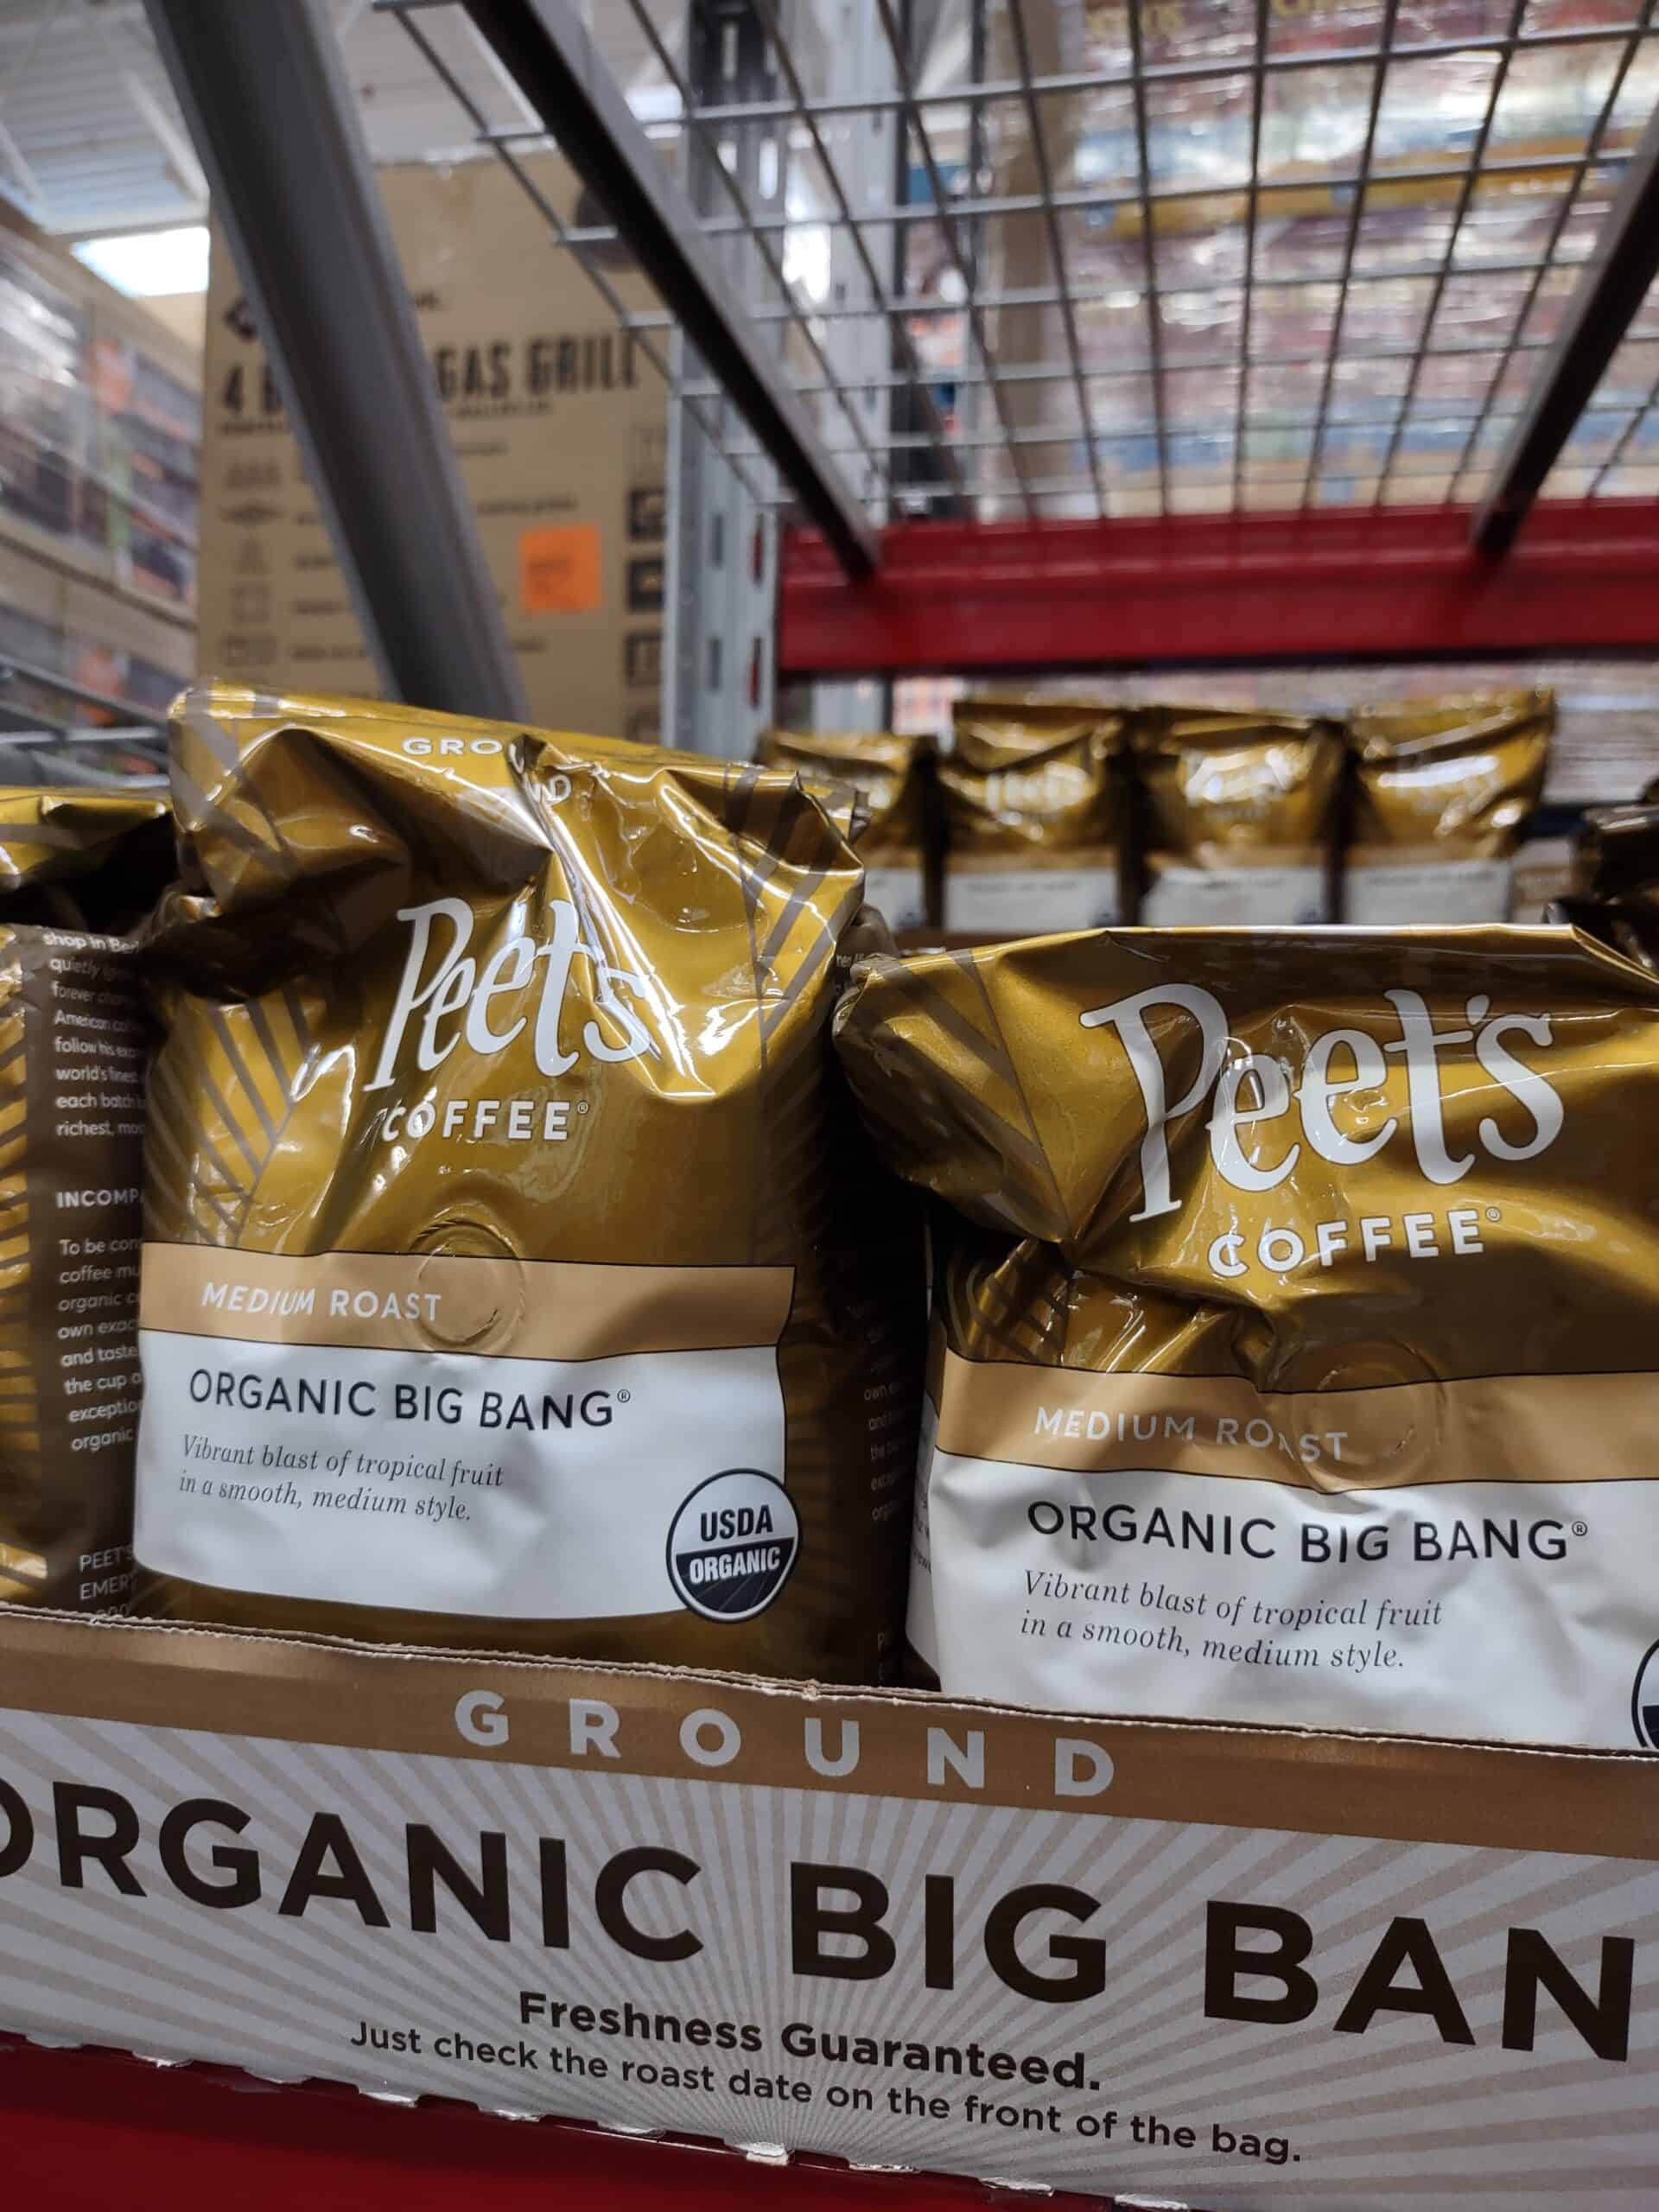 Peets Organic Big Bang Coffee $12.71 at Sam’s